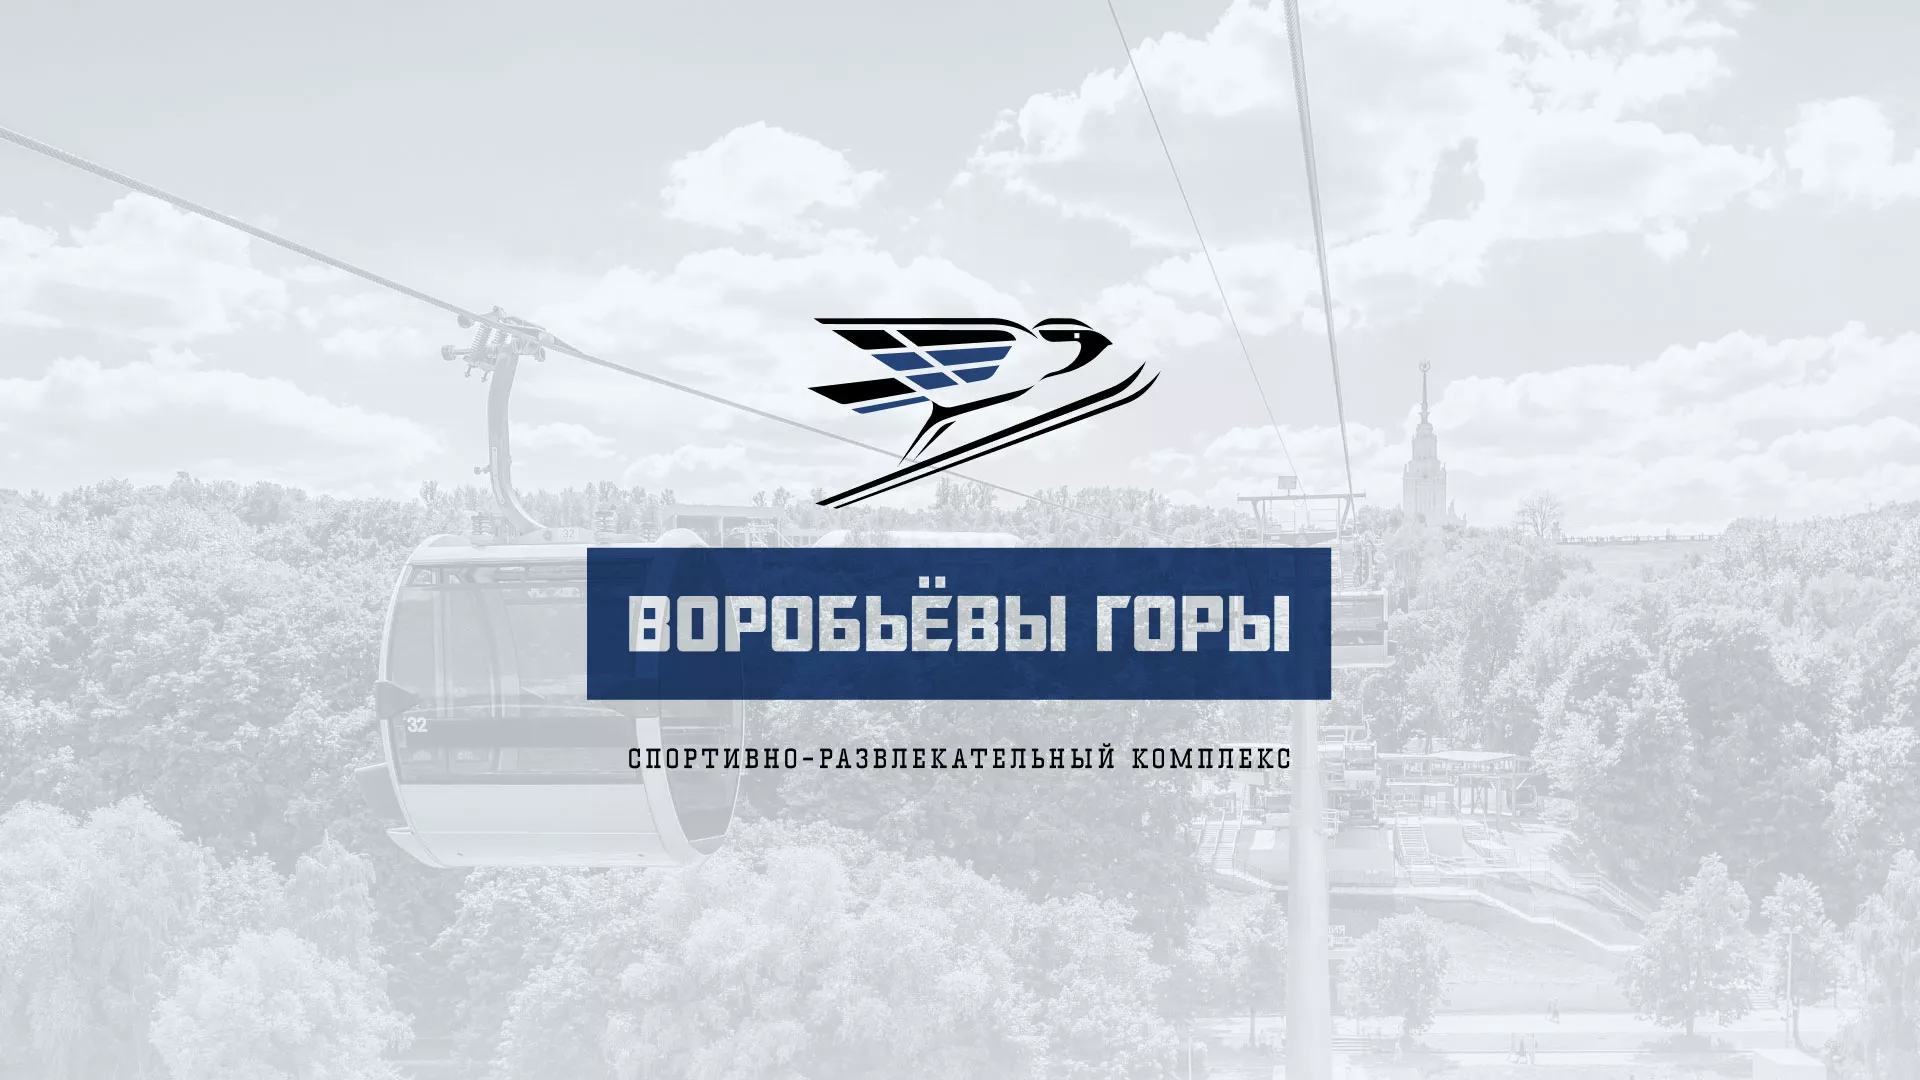 Разработка сайта в Кодинске для спортивно-развлекательного комплекса «Воробьёвы горы»